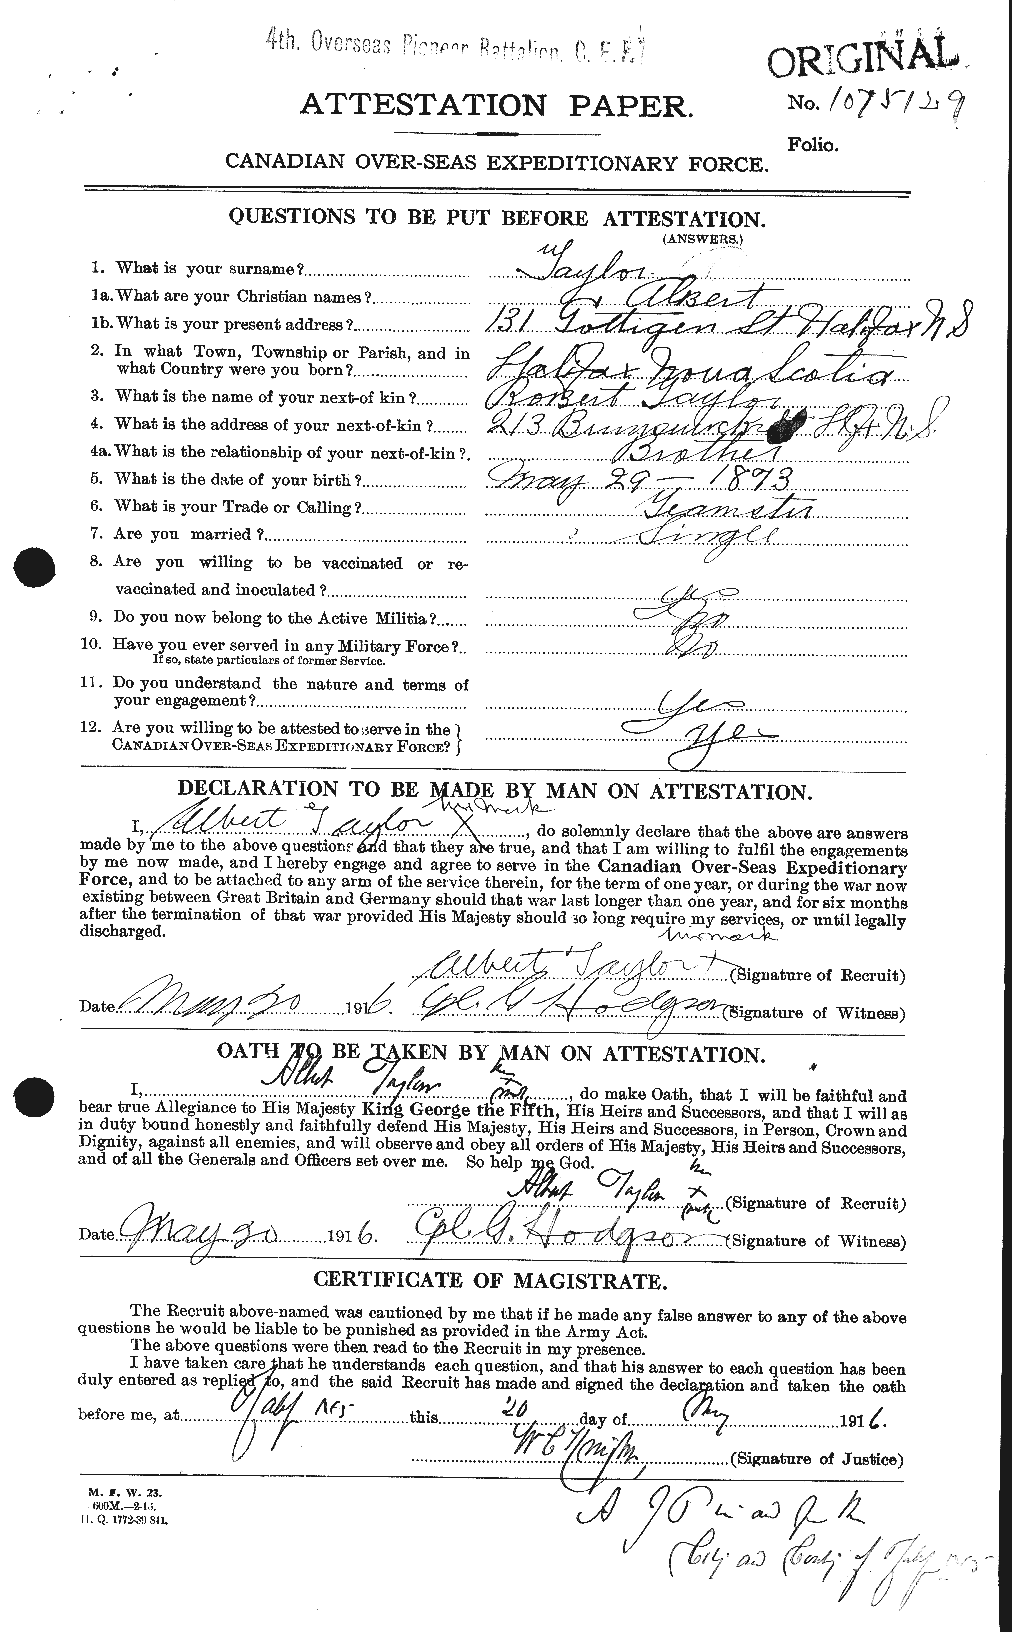 Dossiers du Personnel de la Première Guerre mondiale - CEC 626085a